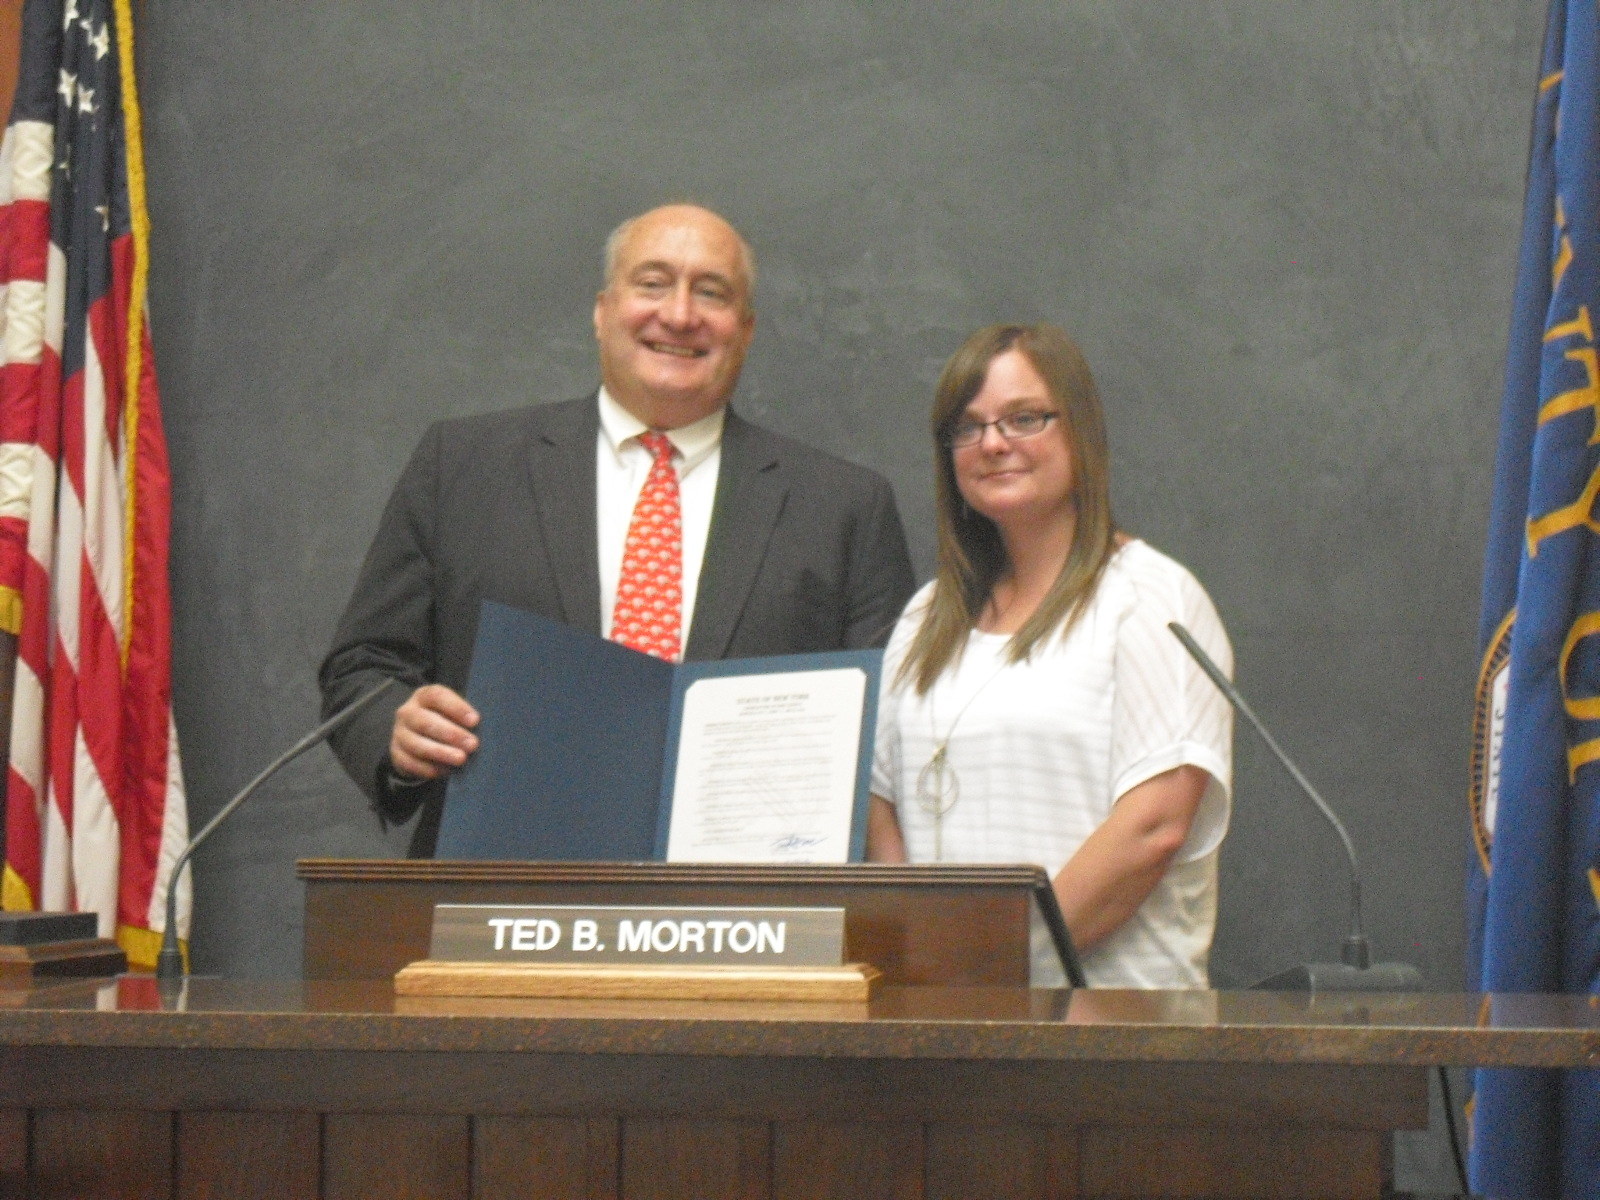 Renee Cerullo and Ted Morton Erie County Legislative